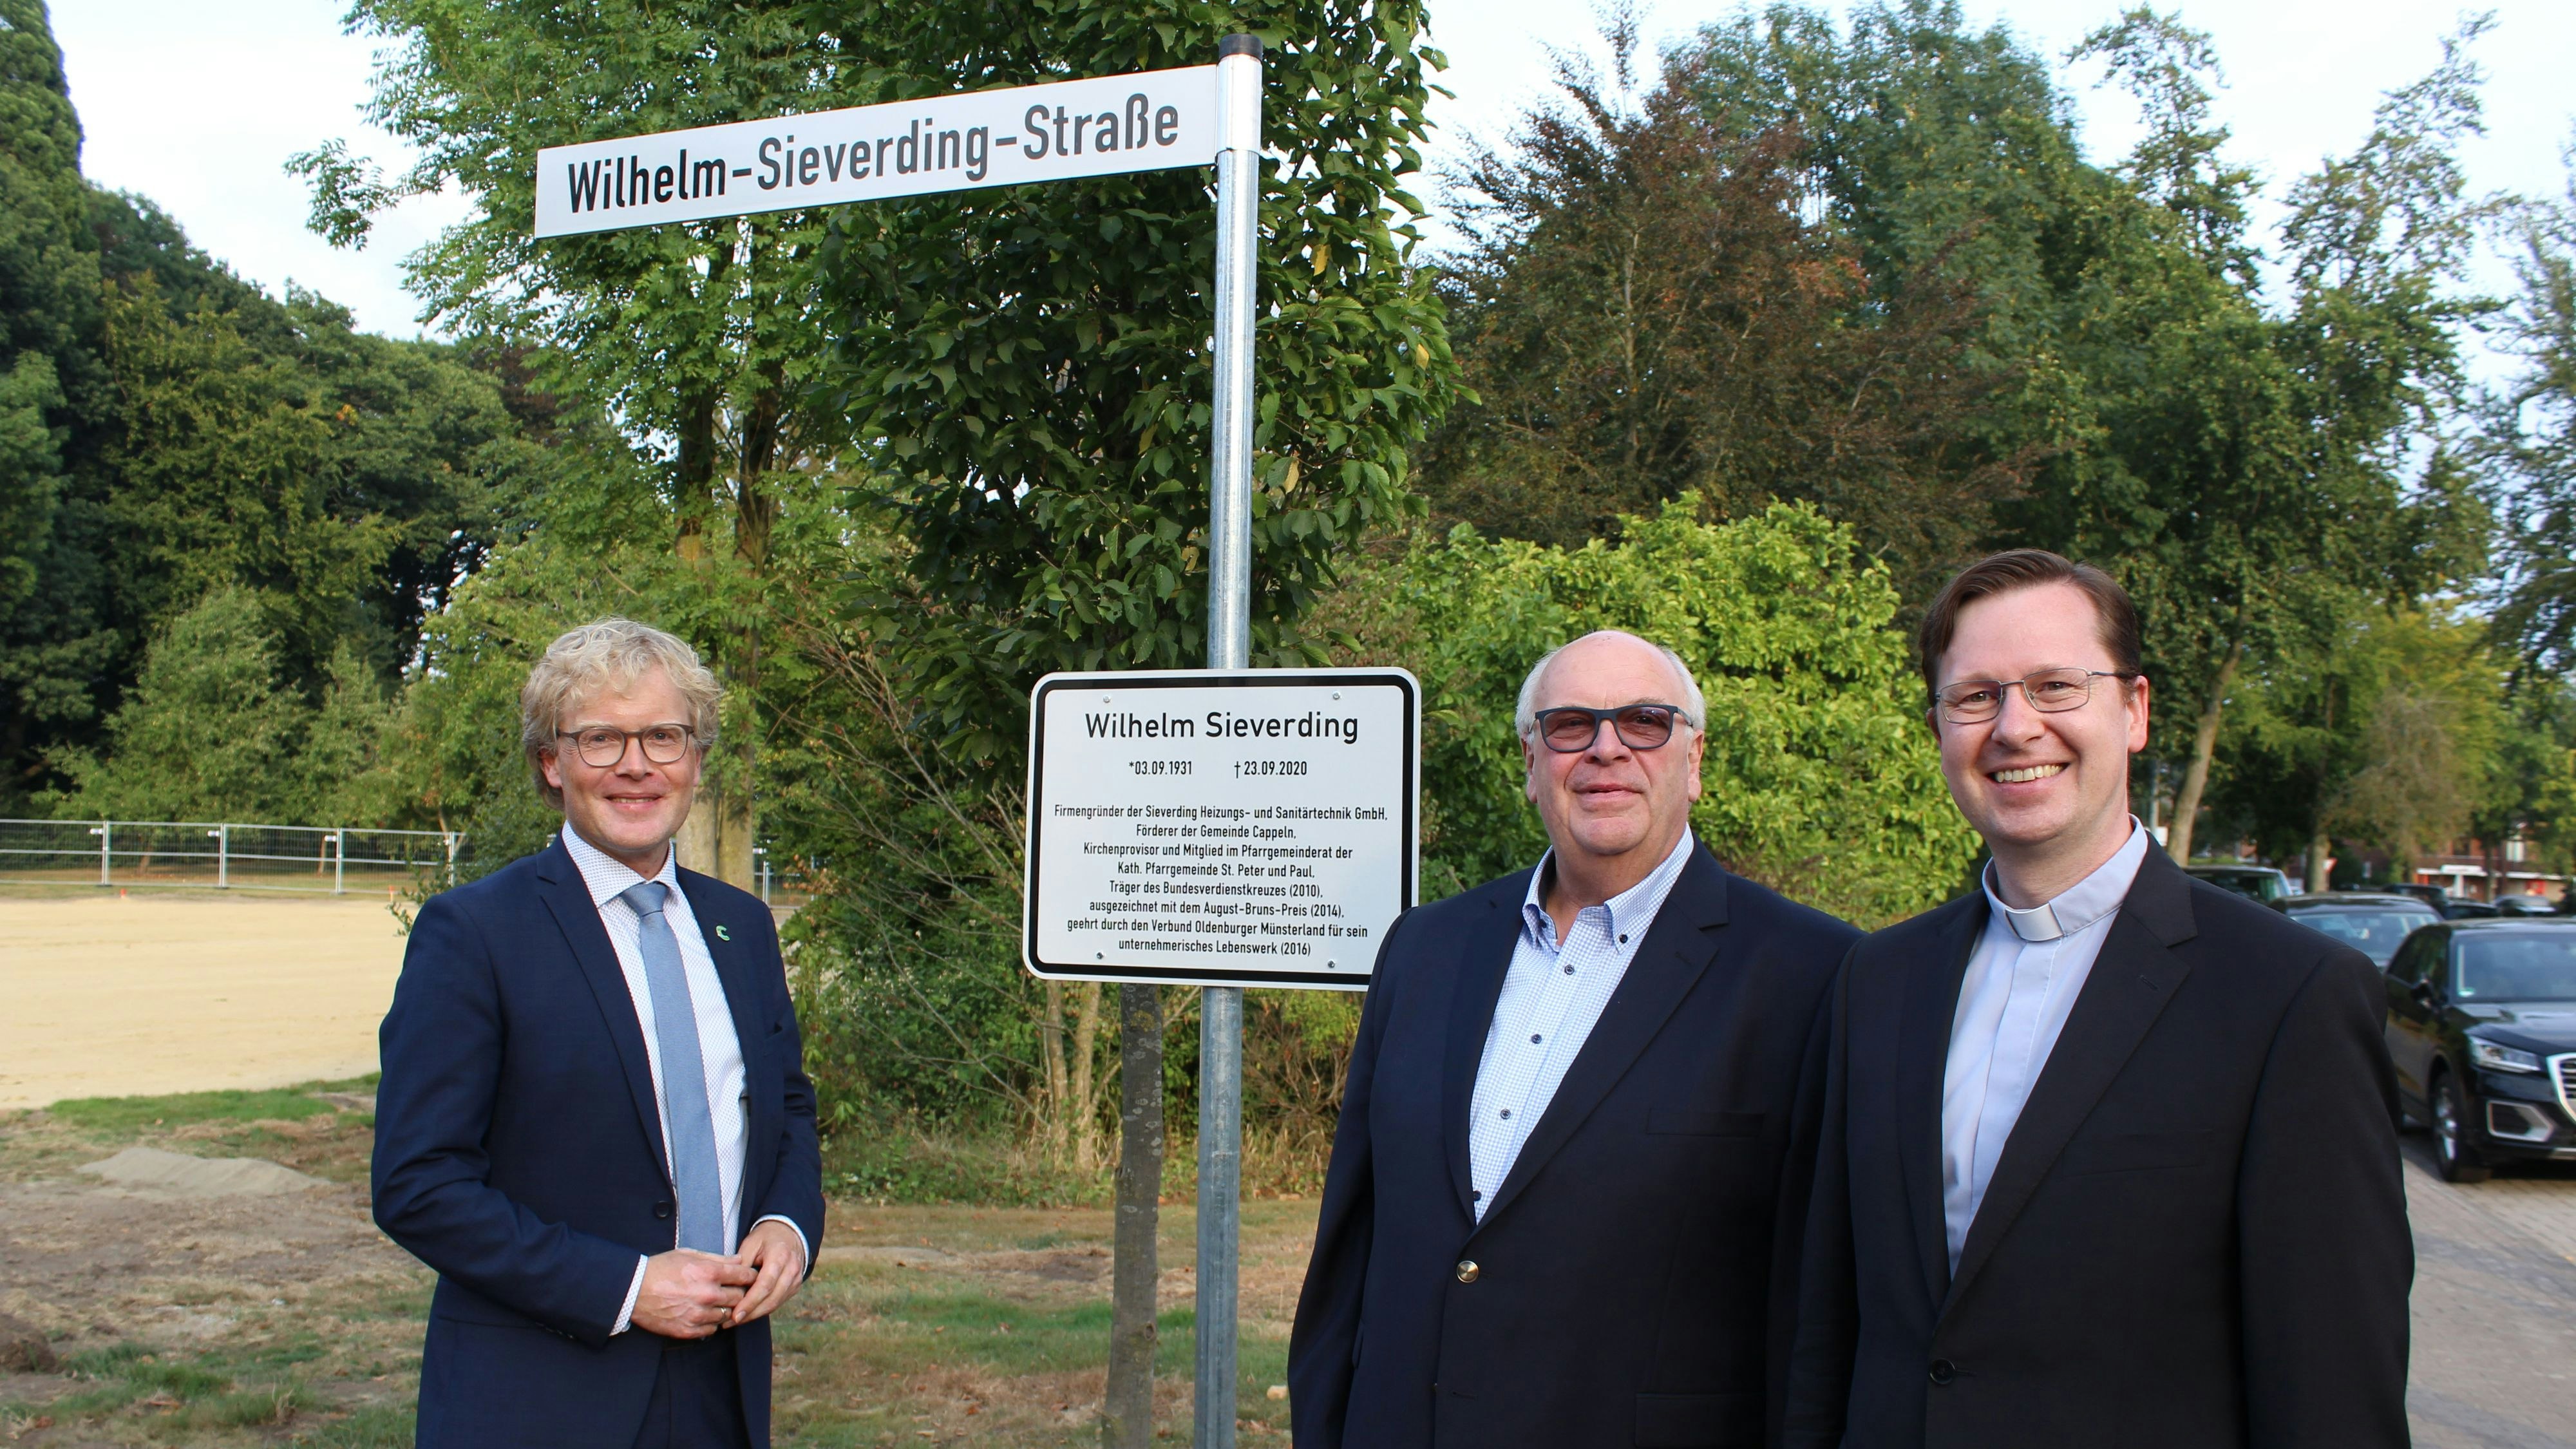 Cappelns Bürgermeister Marcus Brinkmann (von links), Sohn Wilhelm Sieverding und Pastor Jörn Illenseer weihten die Straße offiziell ein. Foto: Hoff